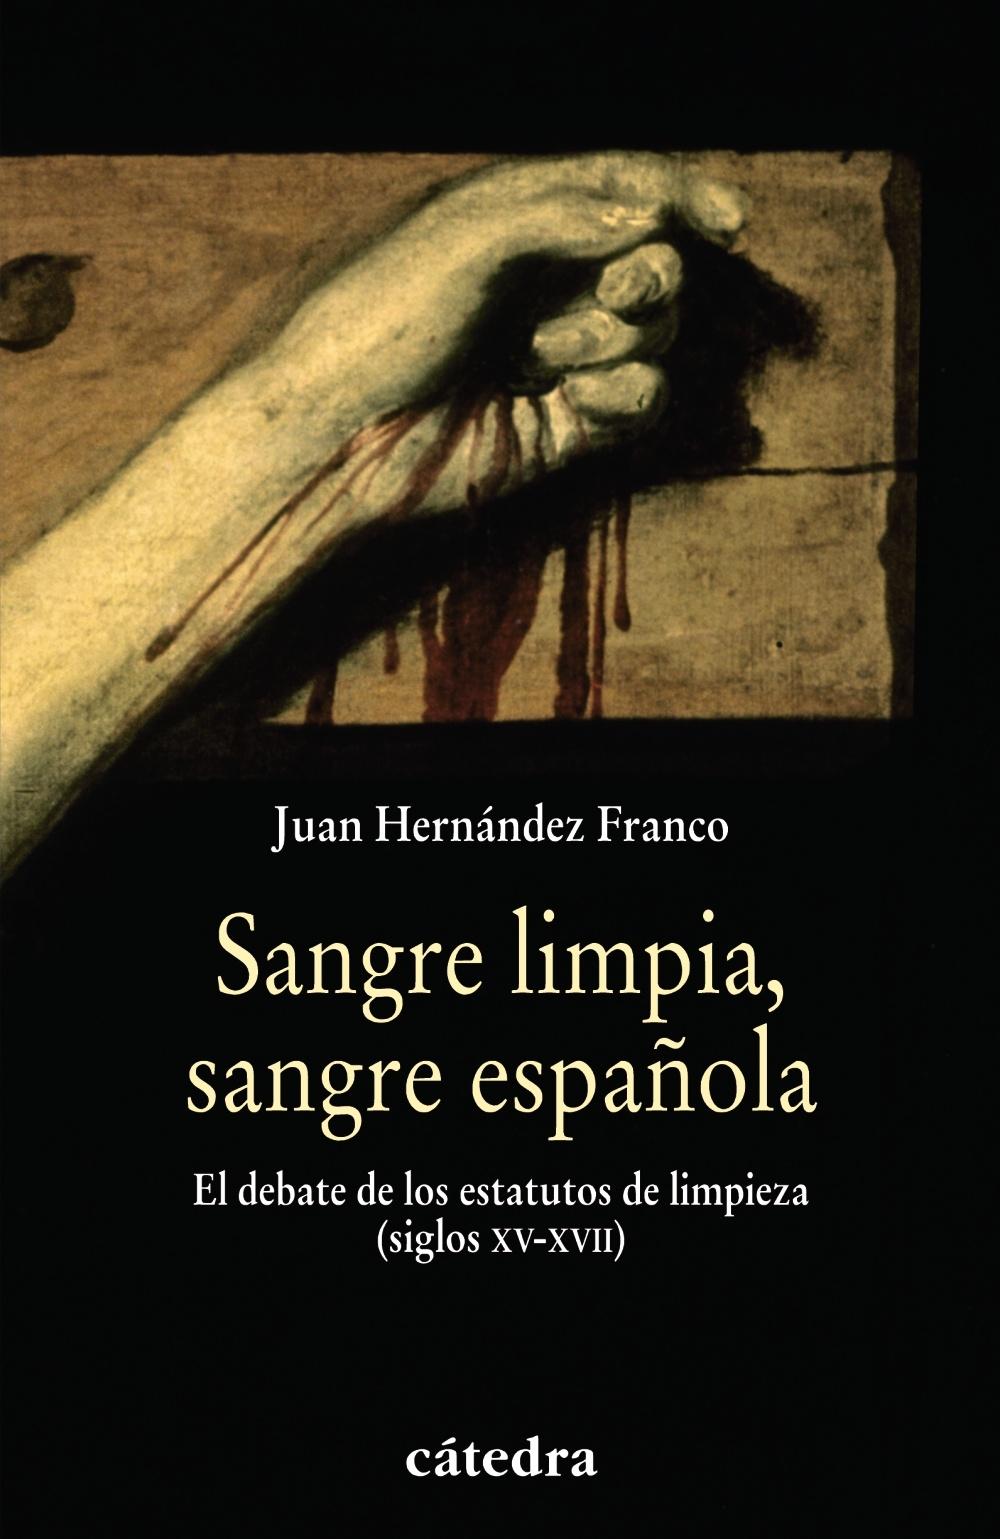 Sangre limpia, sangre española "El debate de los estatutos de limpieza (siglos XV-XVII)"